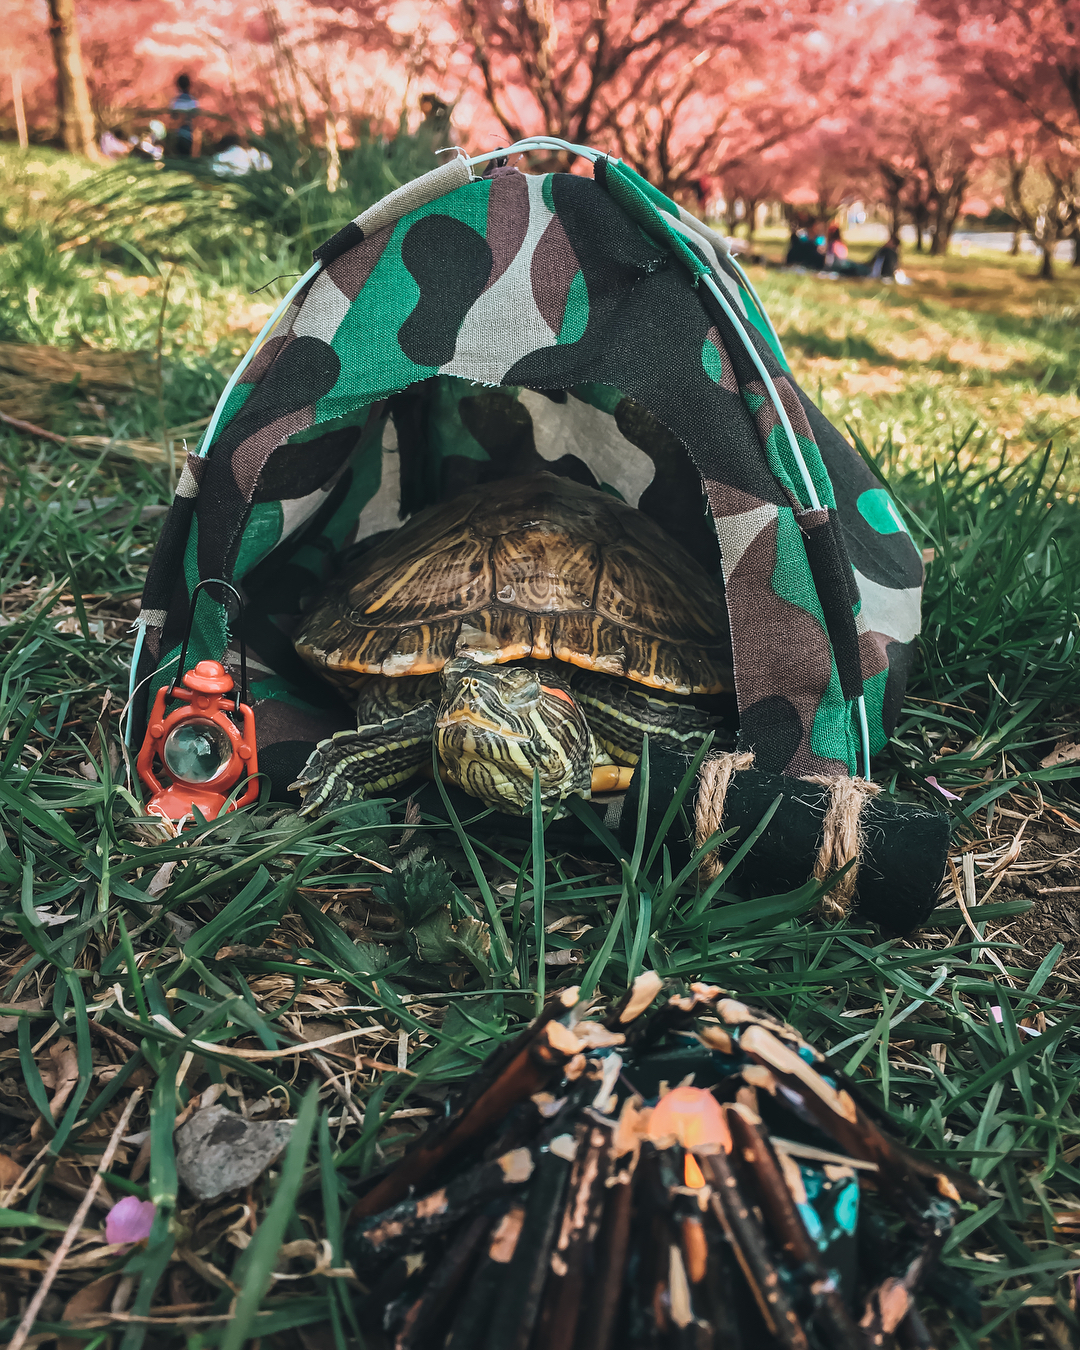 Приключения пары черепах на снимках в Instagram